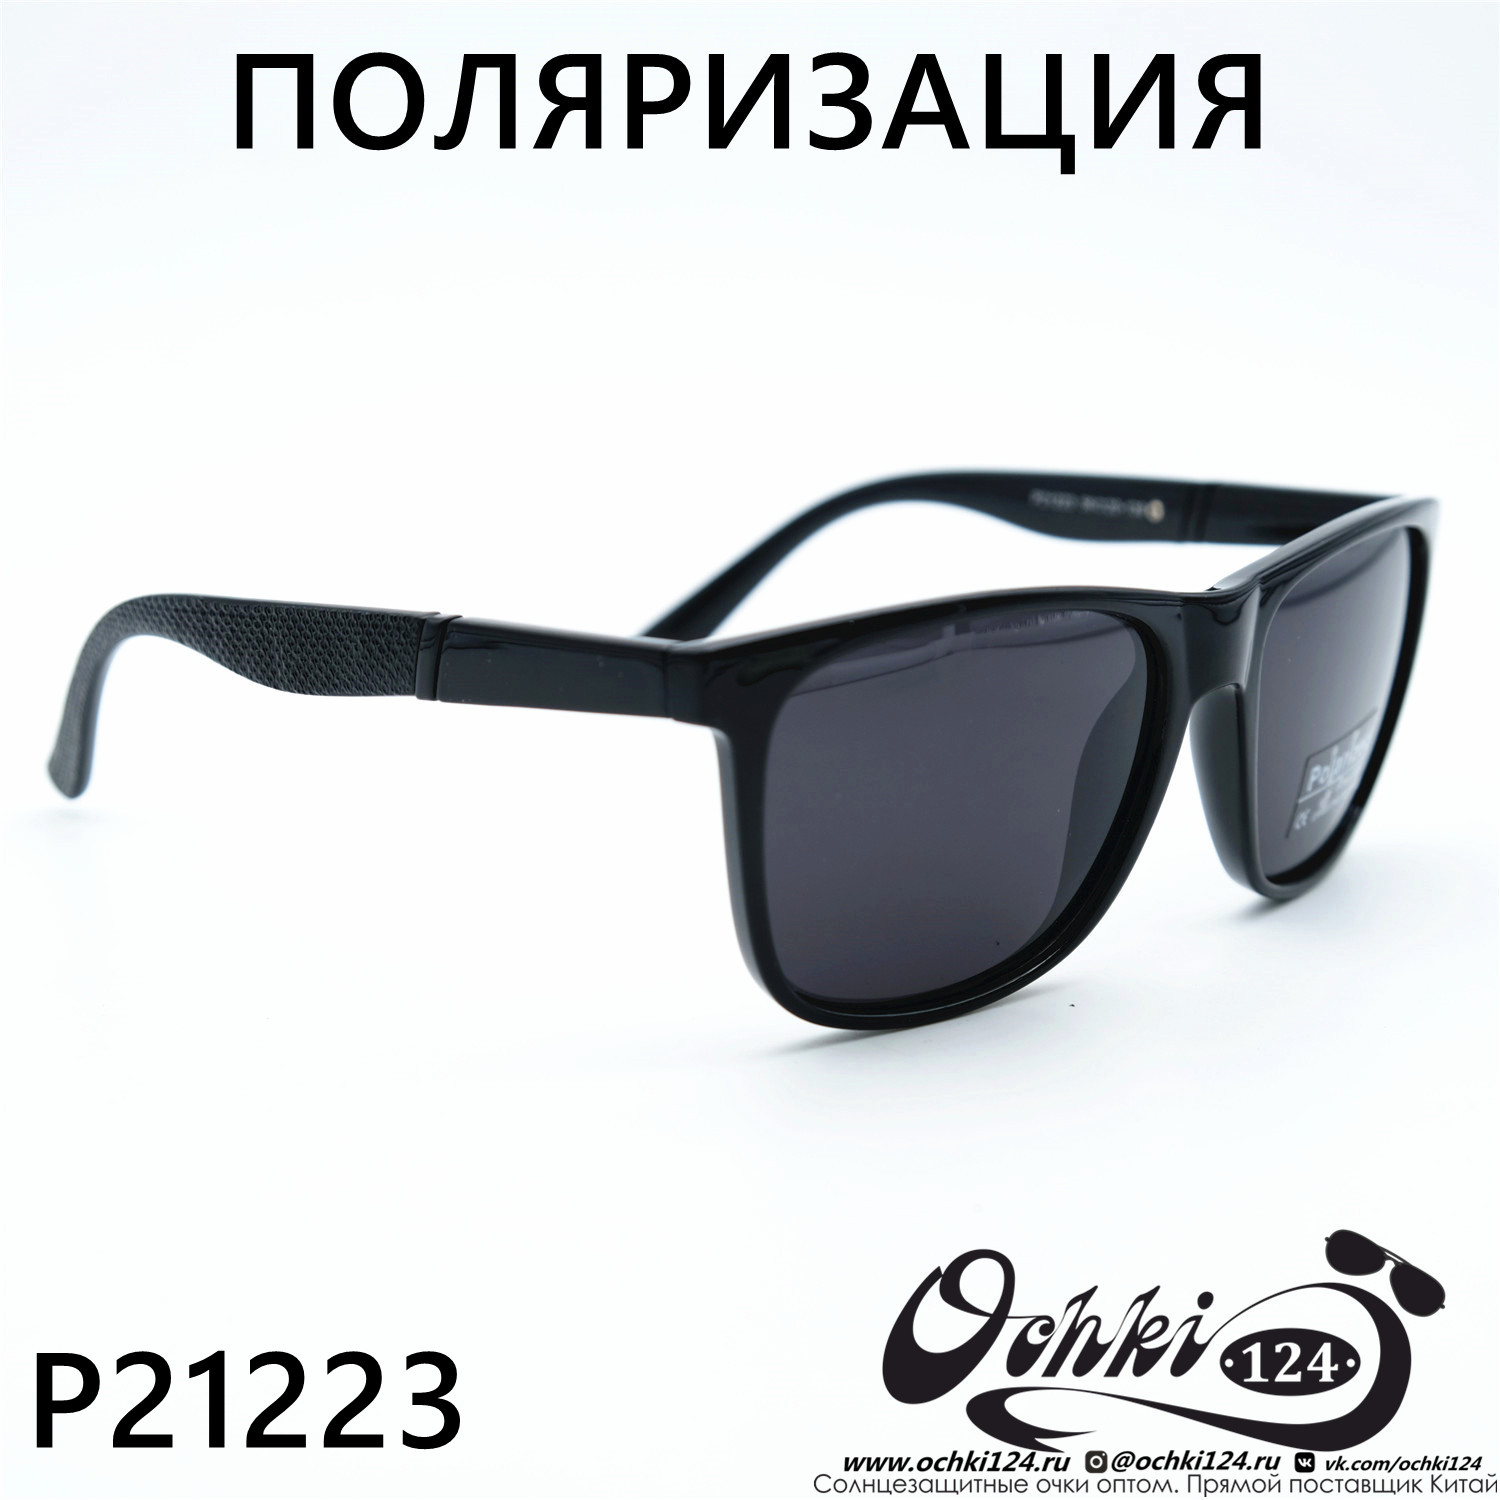  Солнцезащитные очки картинка 2023 Мужские Стандартные Polarized P21223-C1 